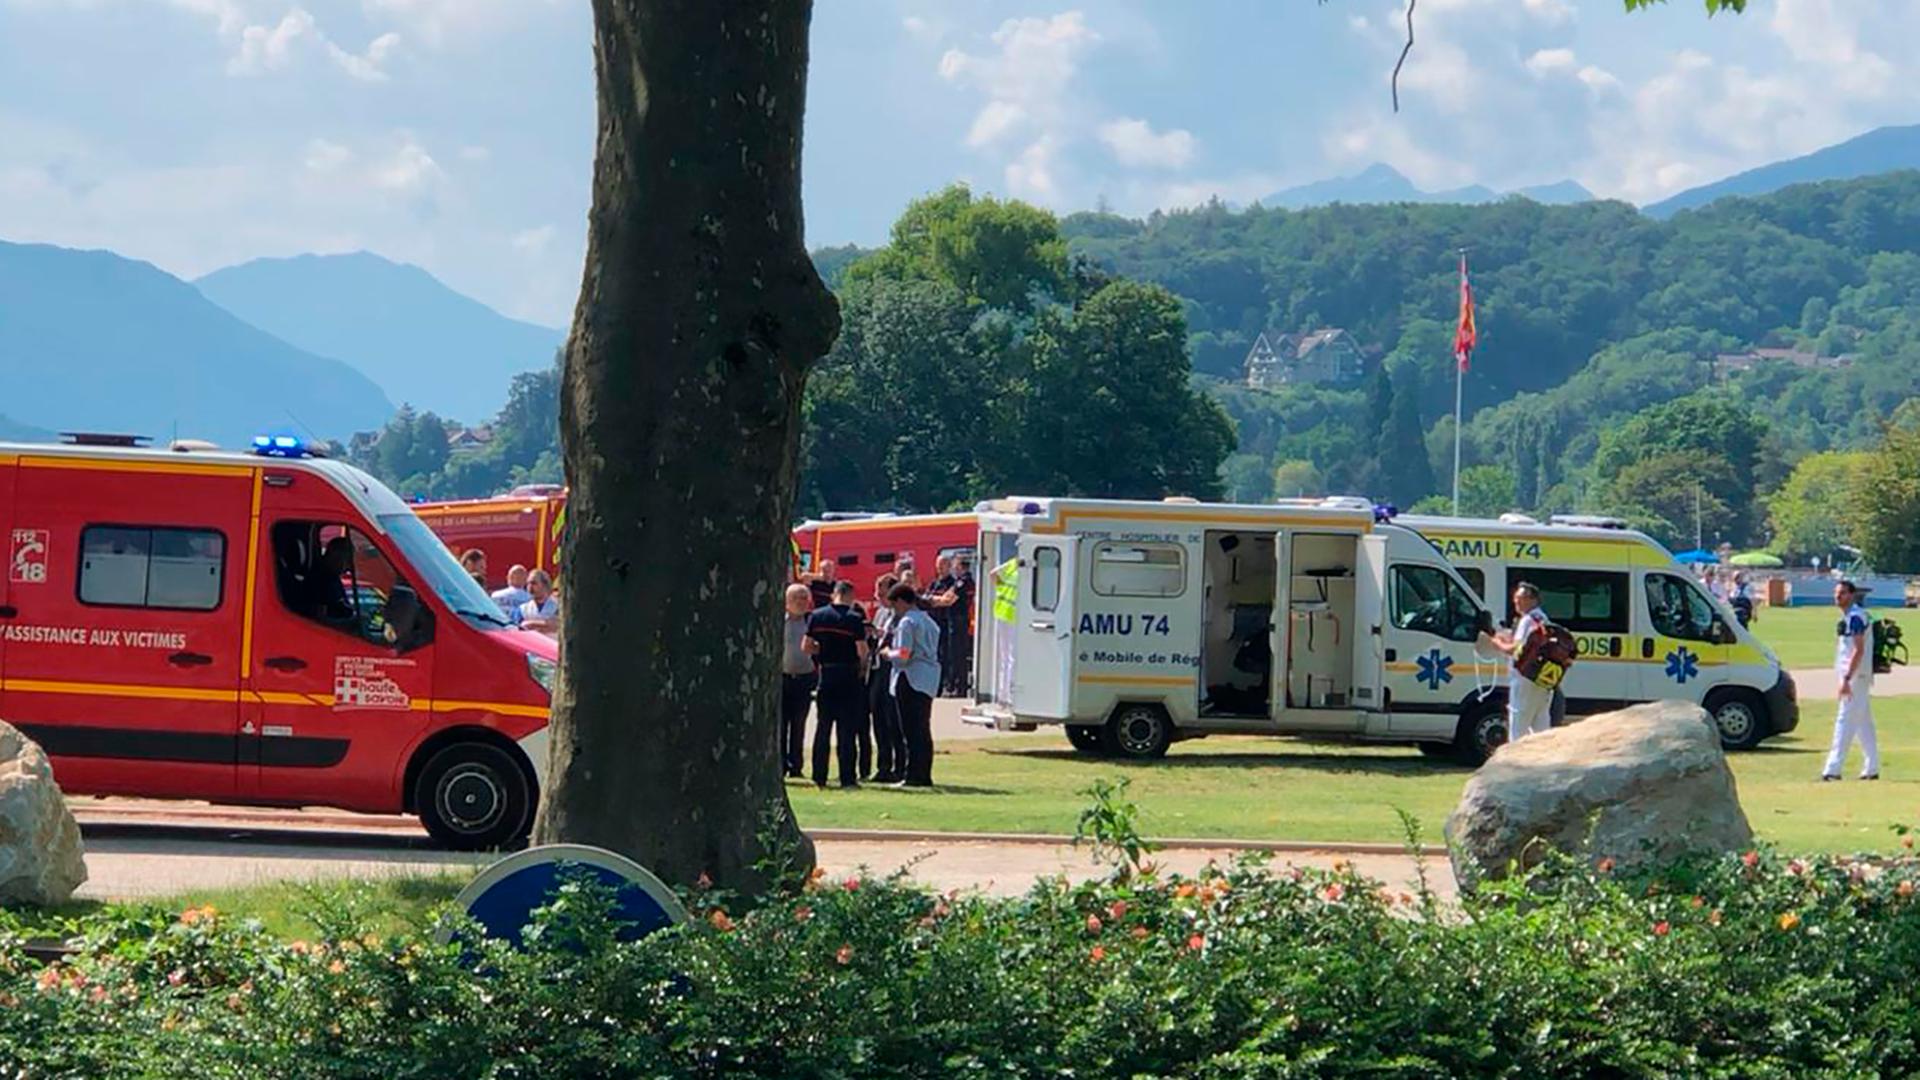 Krankenwagen und Rettungsfahrzeuge stehen am Einsatzort in einem Park in der ostfranzösischen Stadt Annecy.